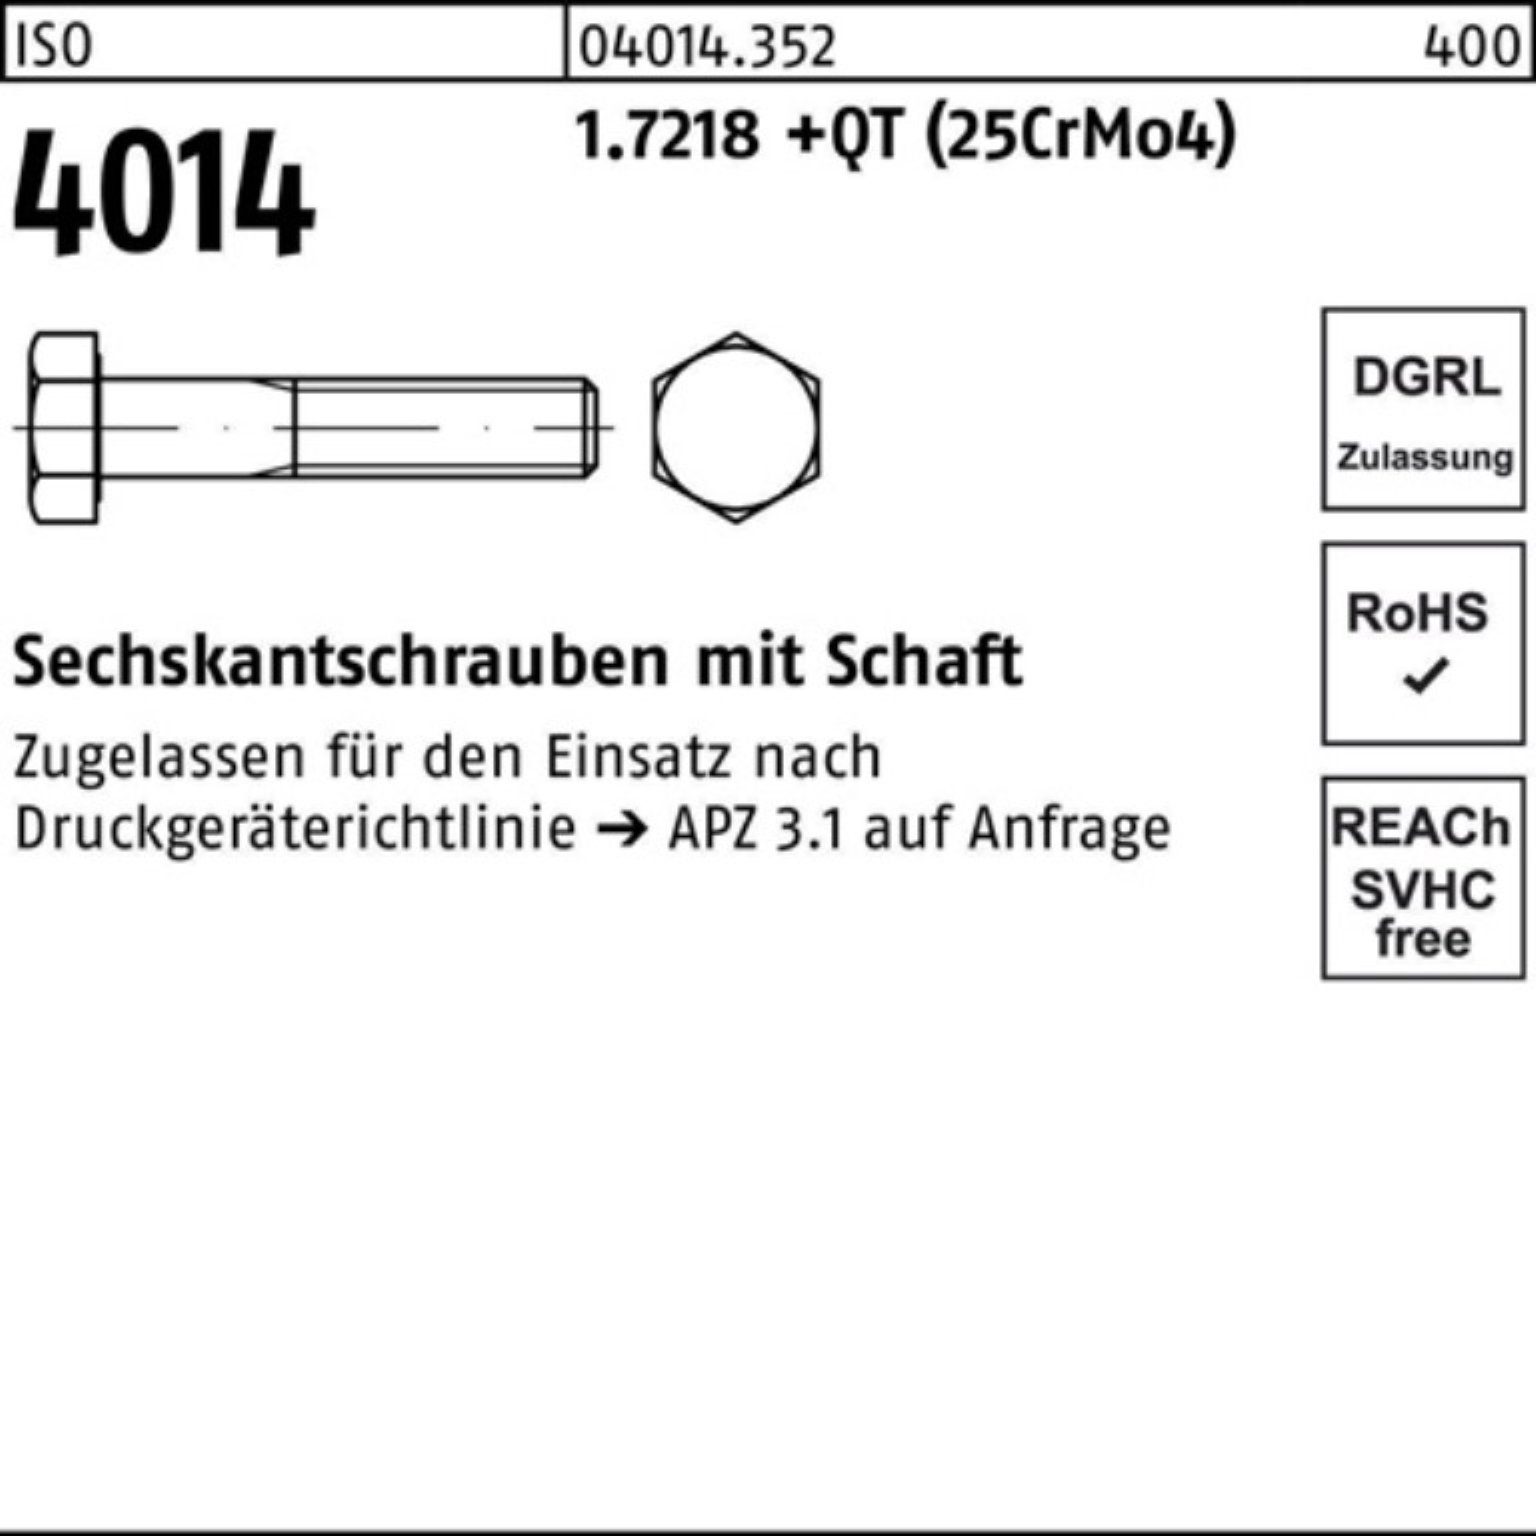 4014 100er ISO Sechskantschraube Sechskantschraube 200 Bufab +QT Pack M24x Schaft 1.7218 (25Cr